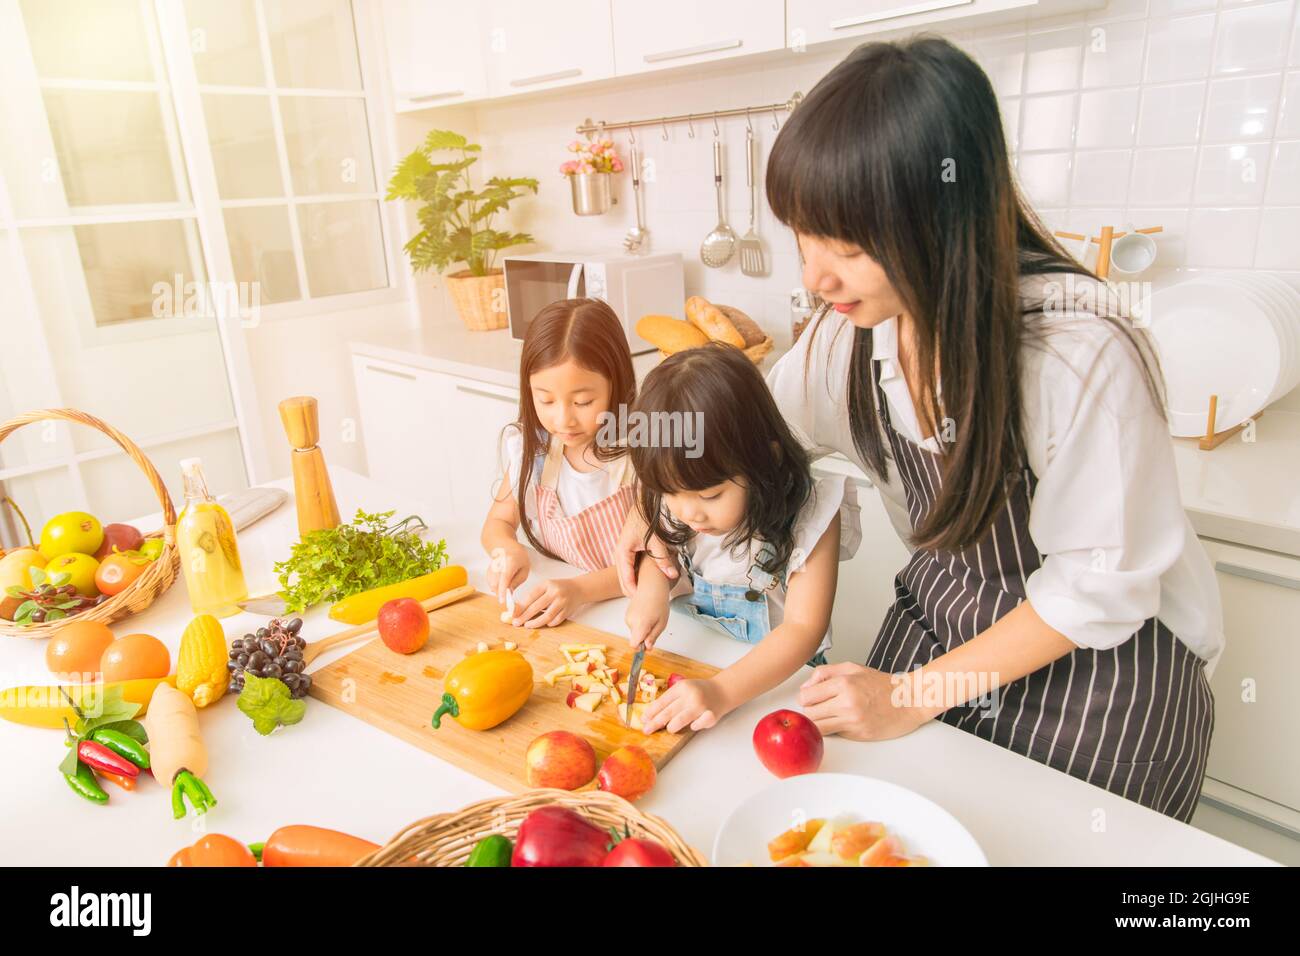 Mädchen Kind genießen Sie spielen geschnittenen Apfel zusammen mit Mutter und Schwester in der Küche zu Hause. Stockfoto